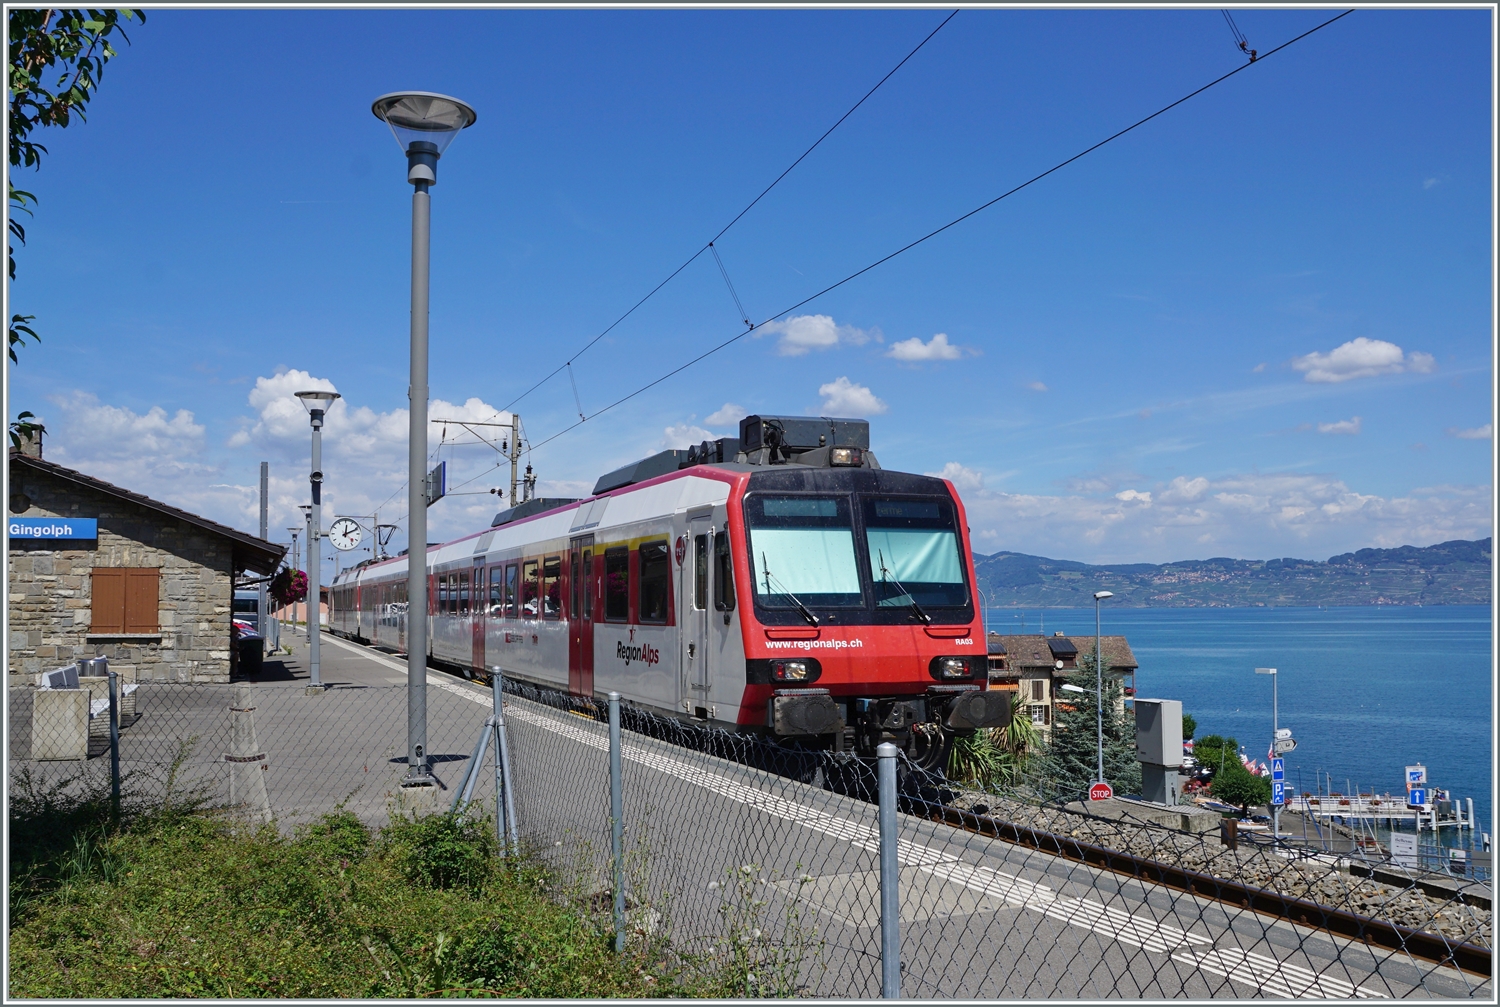 Ein Region Alps RBDe 560  Domino  ist von Brig in St-Gingolph angekommen, wo der Zug auf die Gegenleistung wendet, wobei diese erst in gut einer dreiviertel Stunde statt findet.

30. Juli 2022